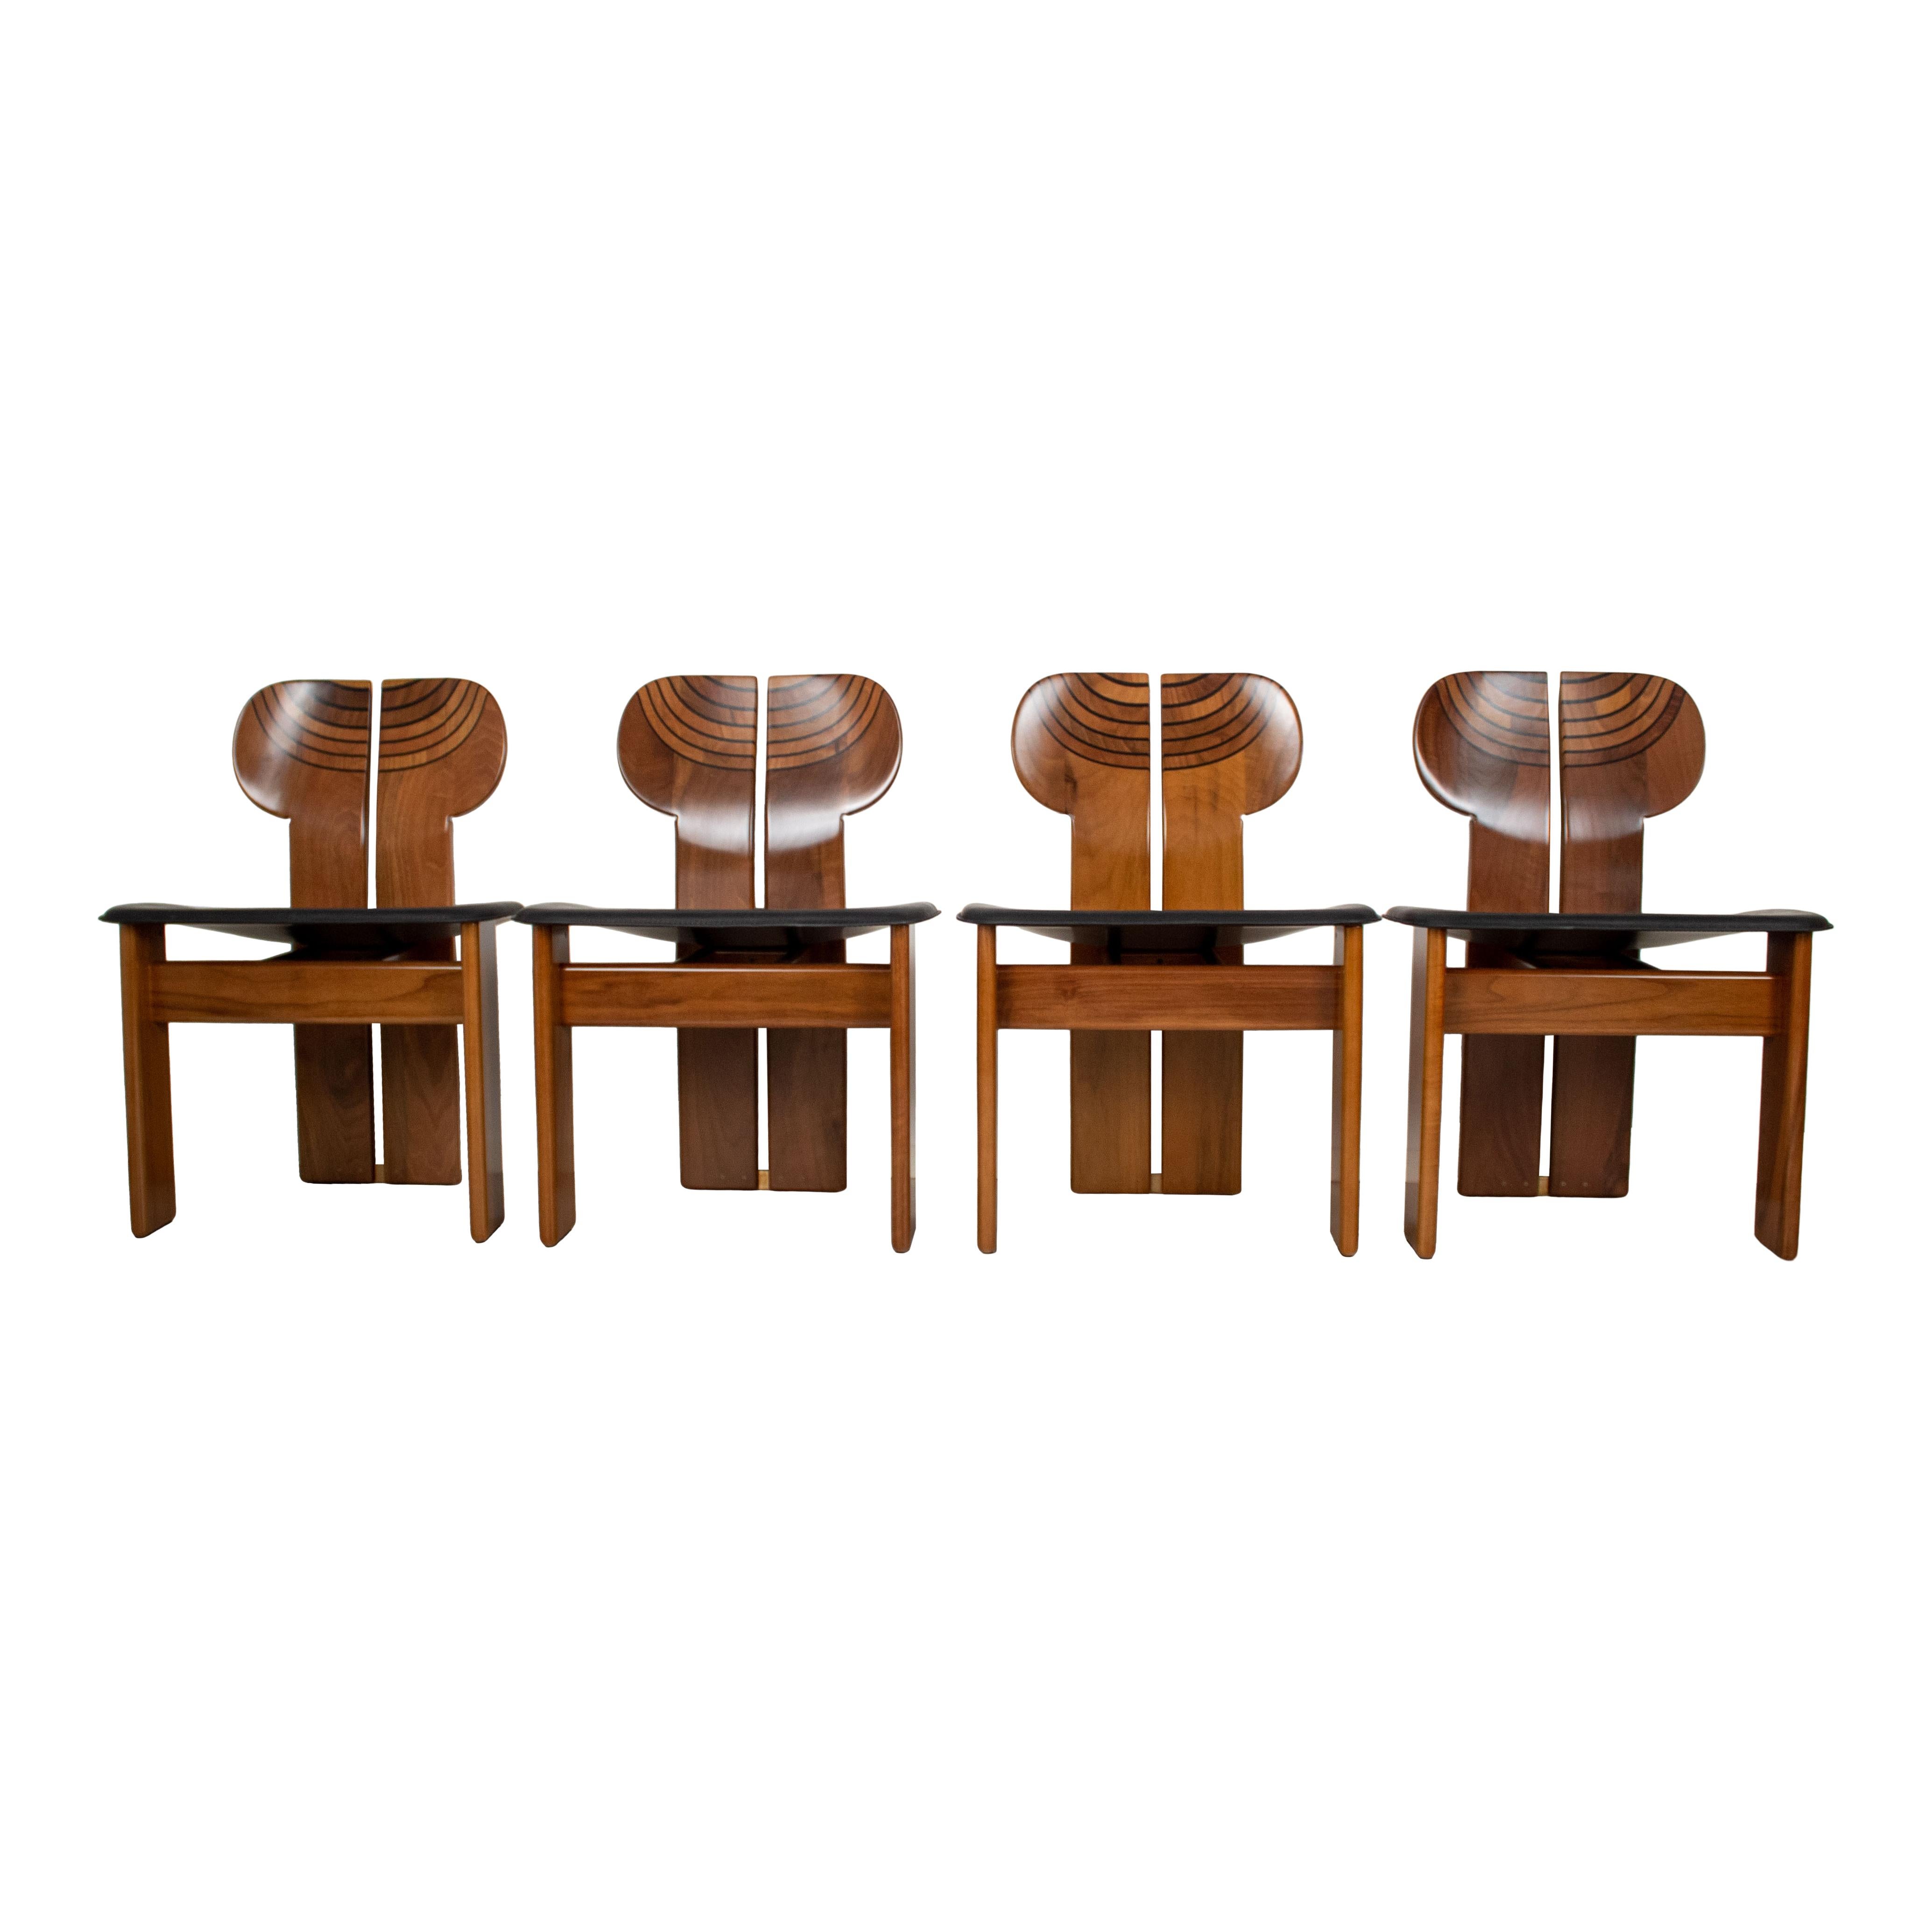 Ensemble de quatre chaises de salle à manger Africa, conçues par Afra et Tobia Scarpa et produites par le fabricant italien Maxalto en 1976.
Ils sont dotés d'une structure en briar de noyer clair et d'un siège en cuir noir.
Entièrement restauré en